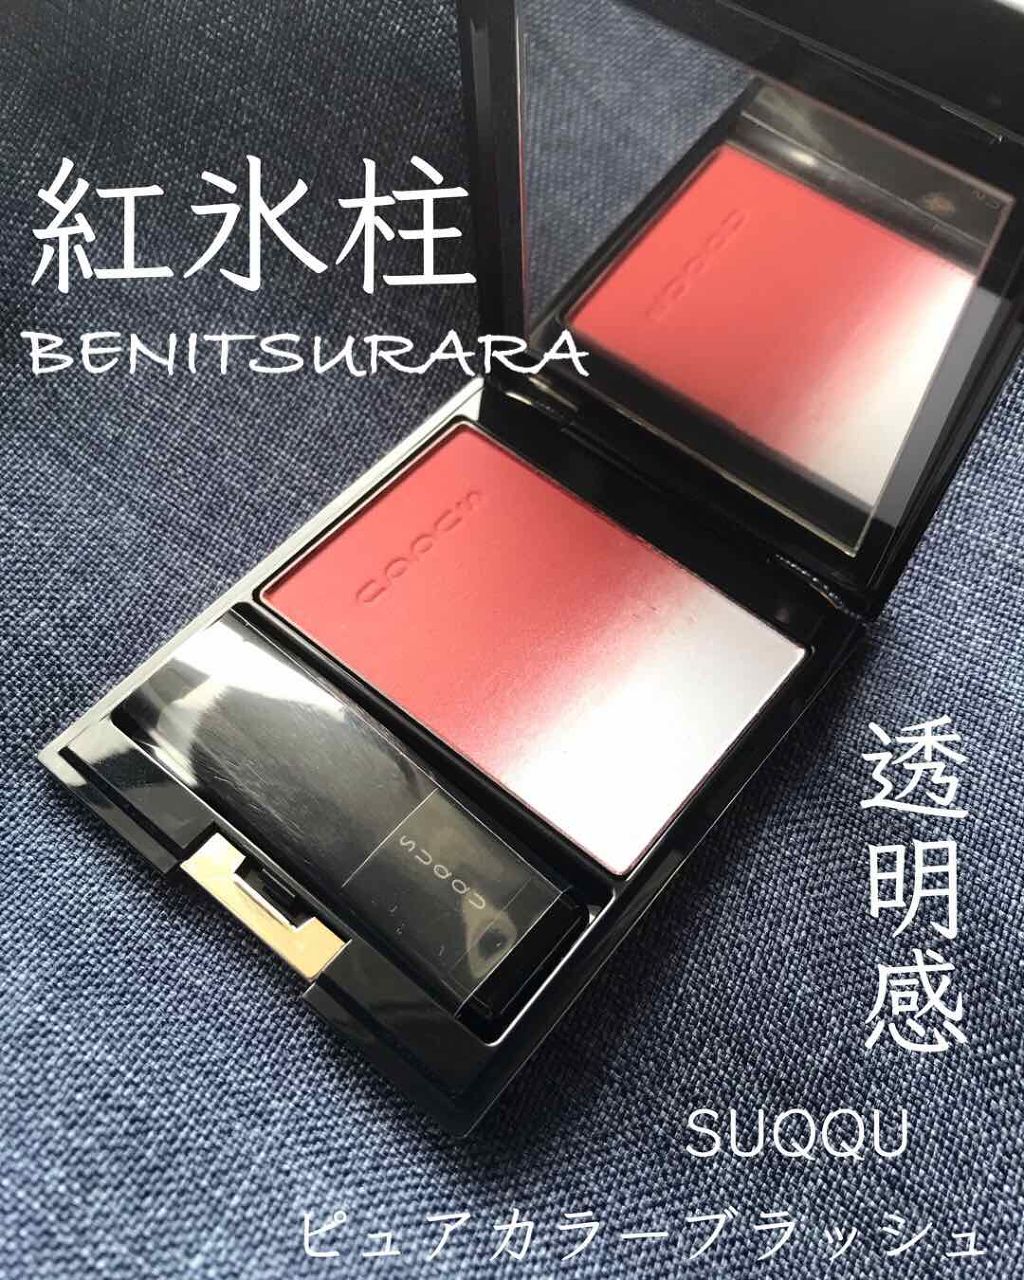 SUQQU 限定完売 115 紅氷柱-BENITSURARA